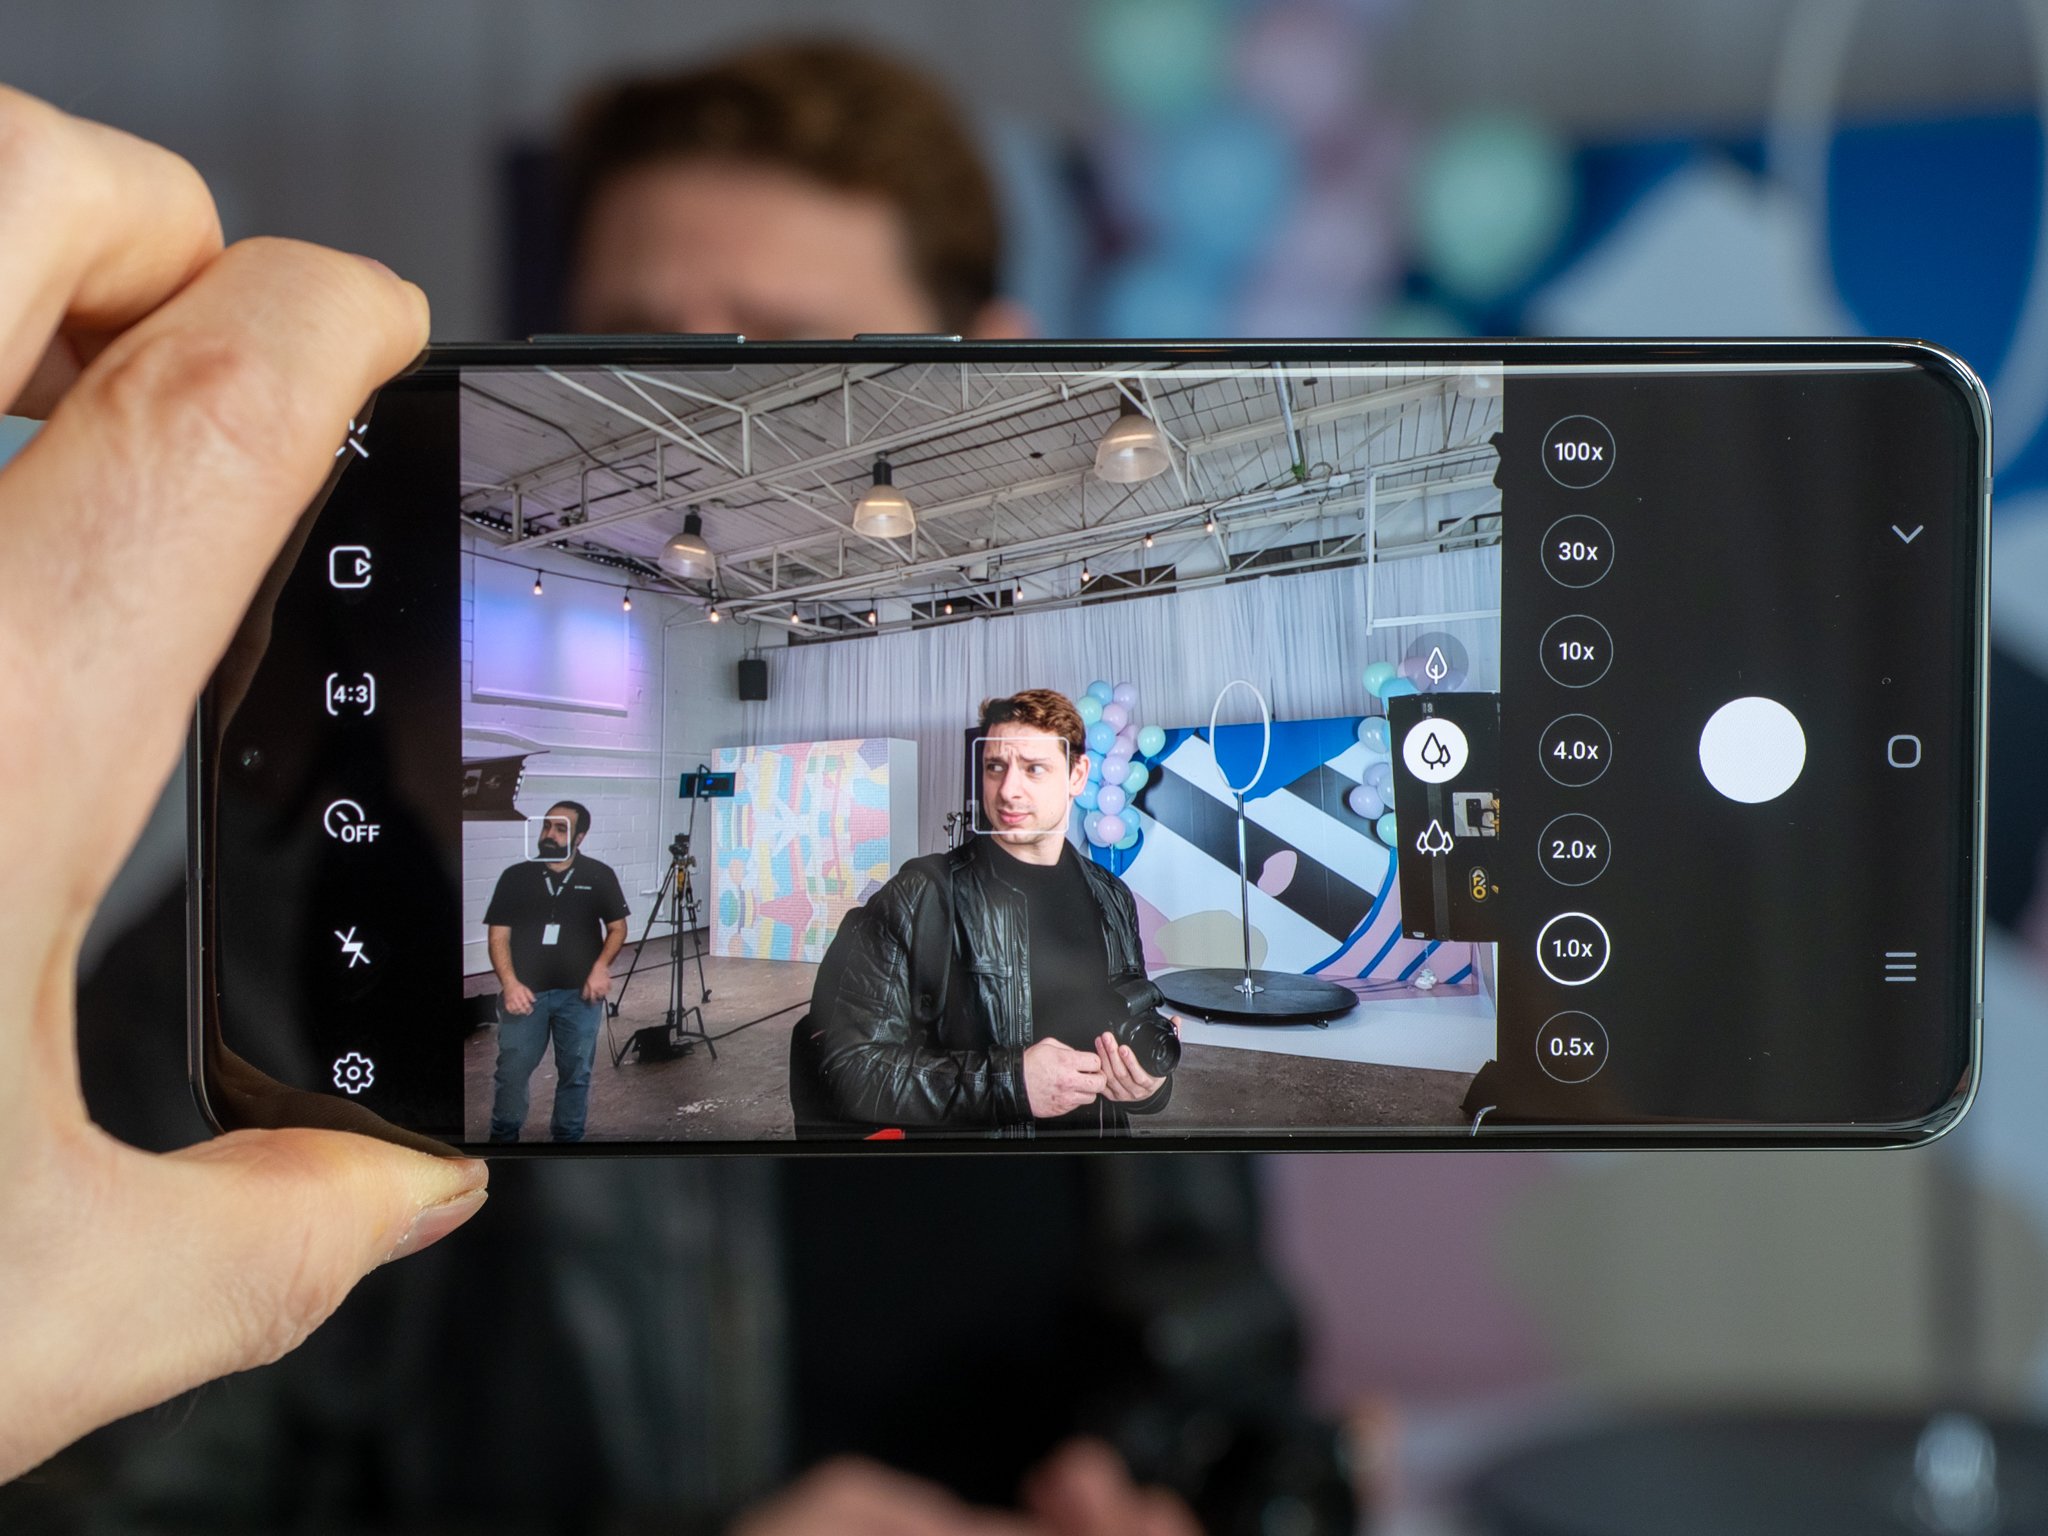 Samsung Galaxy S20 Ultra Camera App